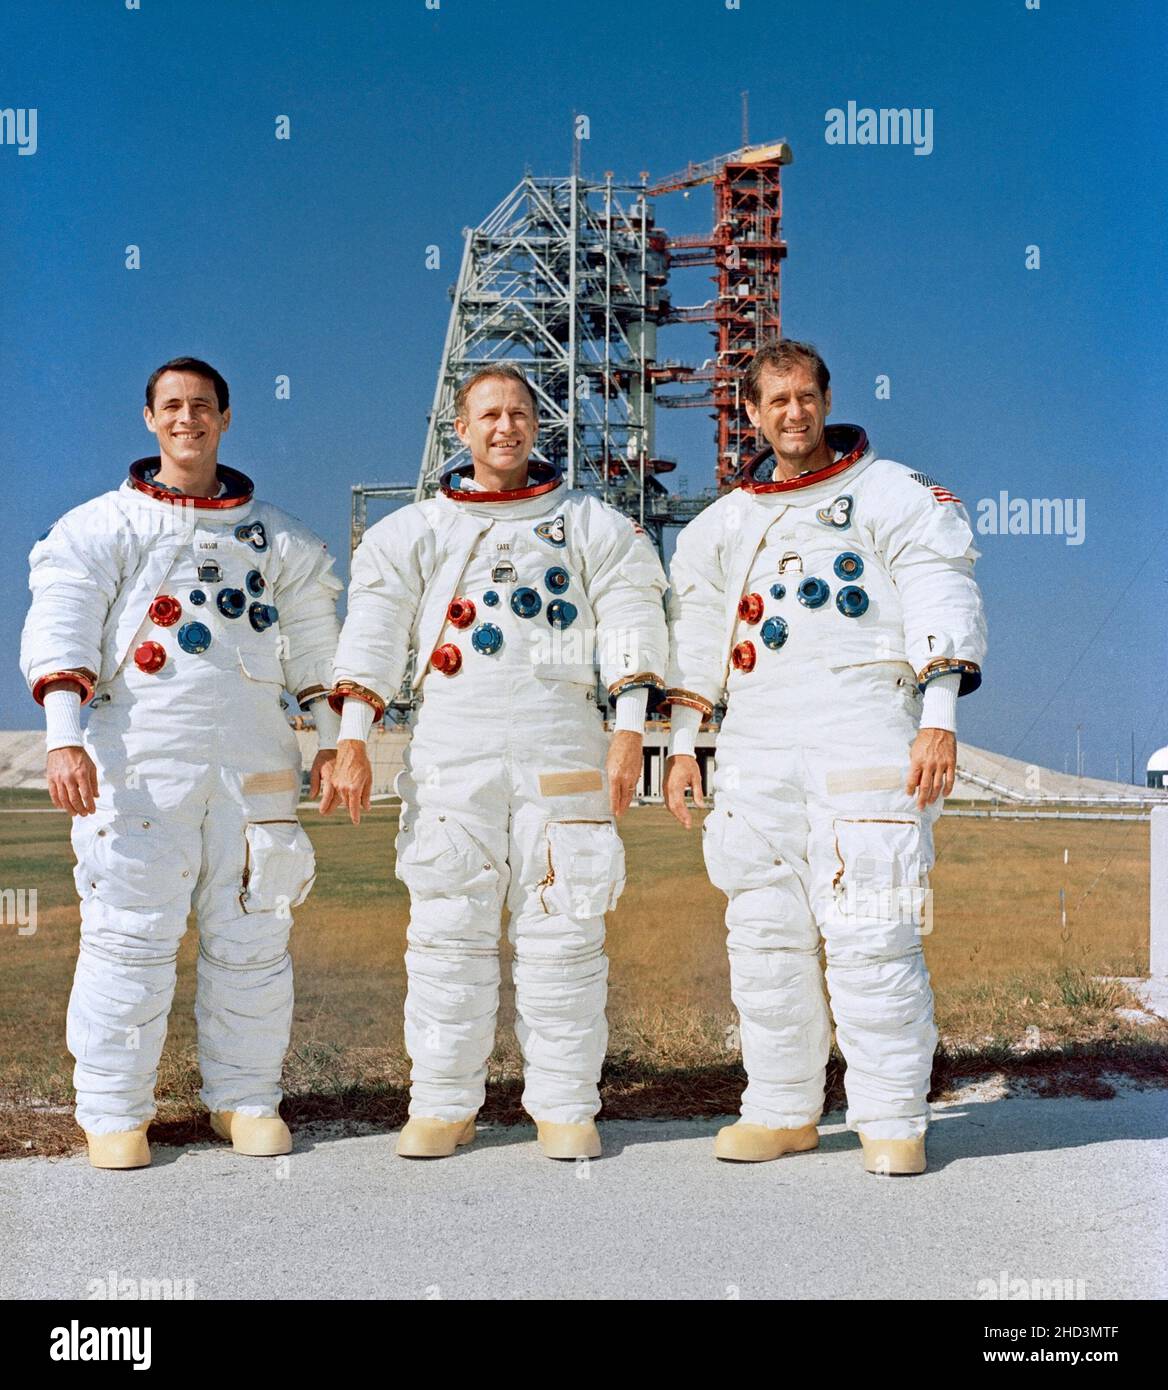 (8. November 1973) --- die drei Mitglieder der Skylab 4-Besatzung werden während der Flugvorfahrt in der Nähe von Pad B, Launch Complex 39, Kennedy Space Center, Florida, fotografiert. Sie sind, von links nach rechts, Wissenschaftler-Astronaut Edward G. Gibson, Wissenschaftspilot; Astronaut Gerald P. Carr, Kommandant; und Astronaut William R. Pogue, Pilot. Das Raumfahrzeug Skylab 4/Saturn 1B befindet sich auf dem Pad im Hintergrund. Skylab 4, der dritte und letzte bemannte Besuch der Skylab-Raumstation in der Erdumlaufbahn, wird zusätzliche Informationen über Erde und Sonne liefern sowie einen günstigen Ort für die Beobachtung bieten Stockfoto